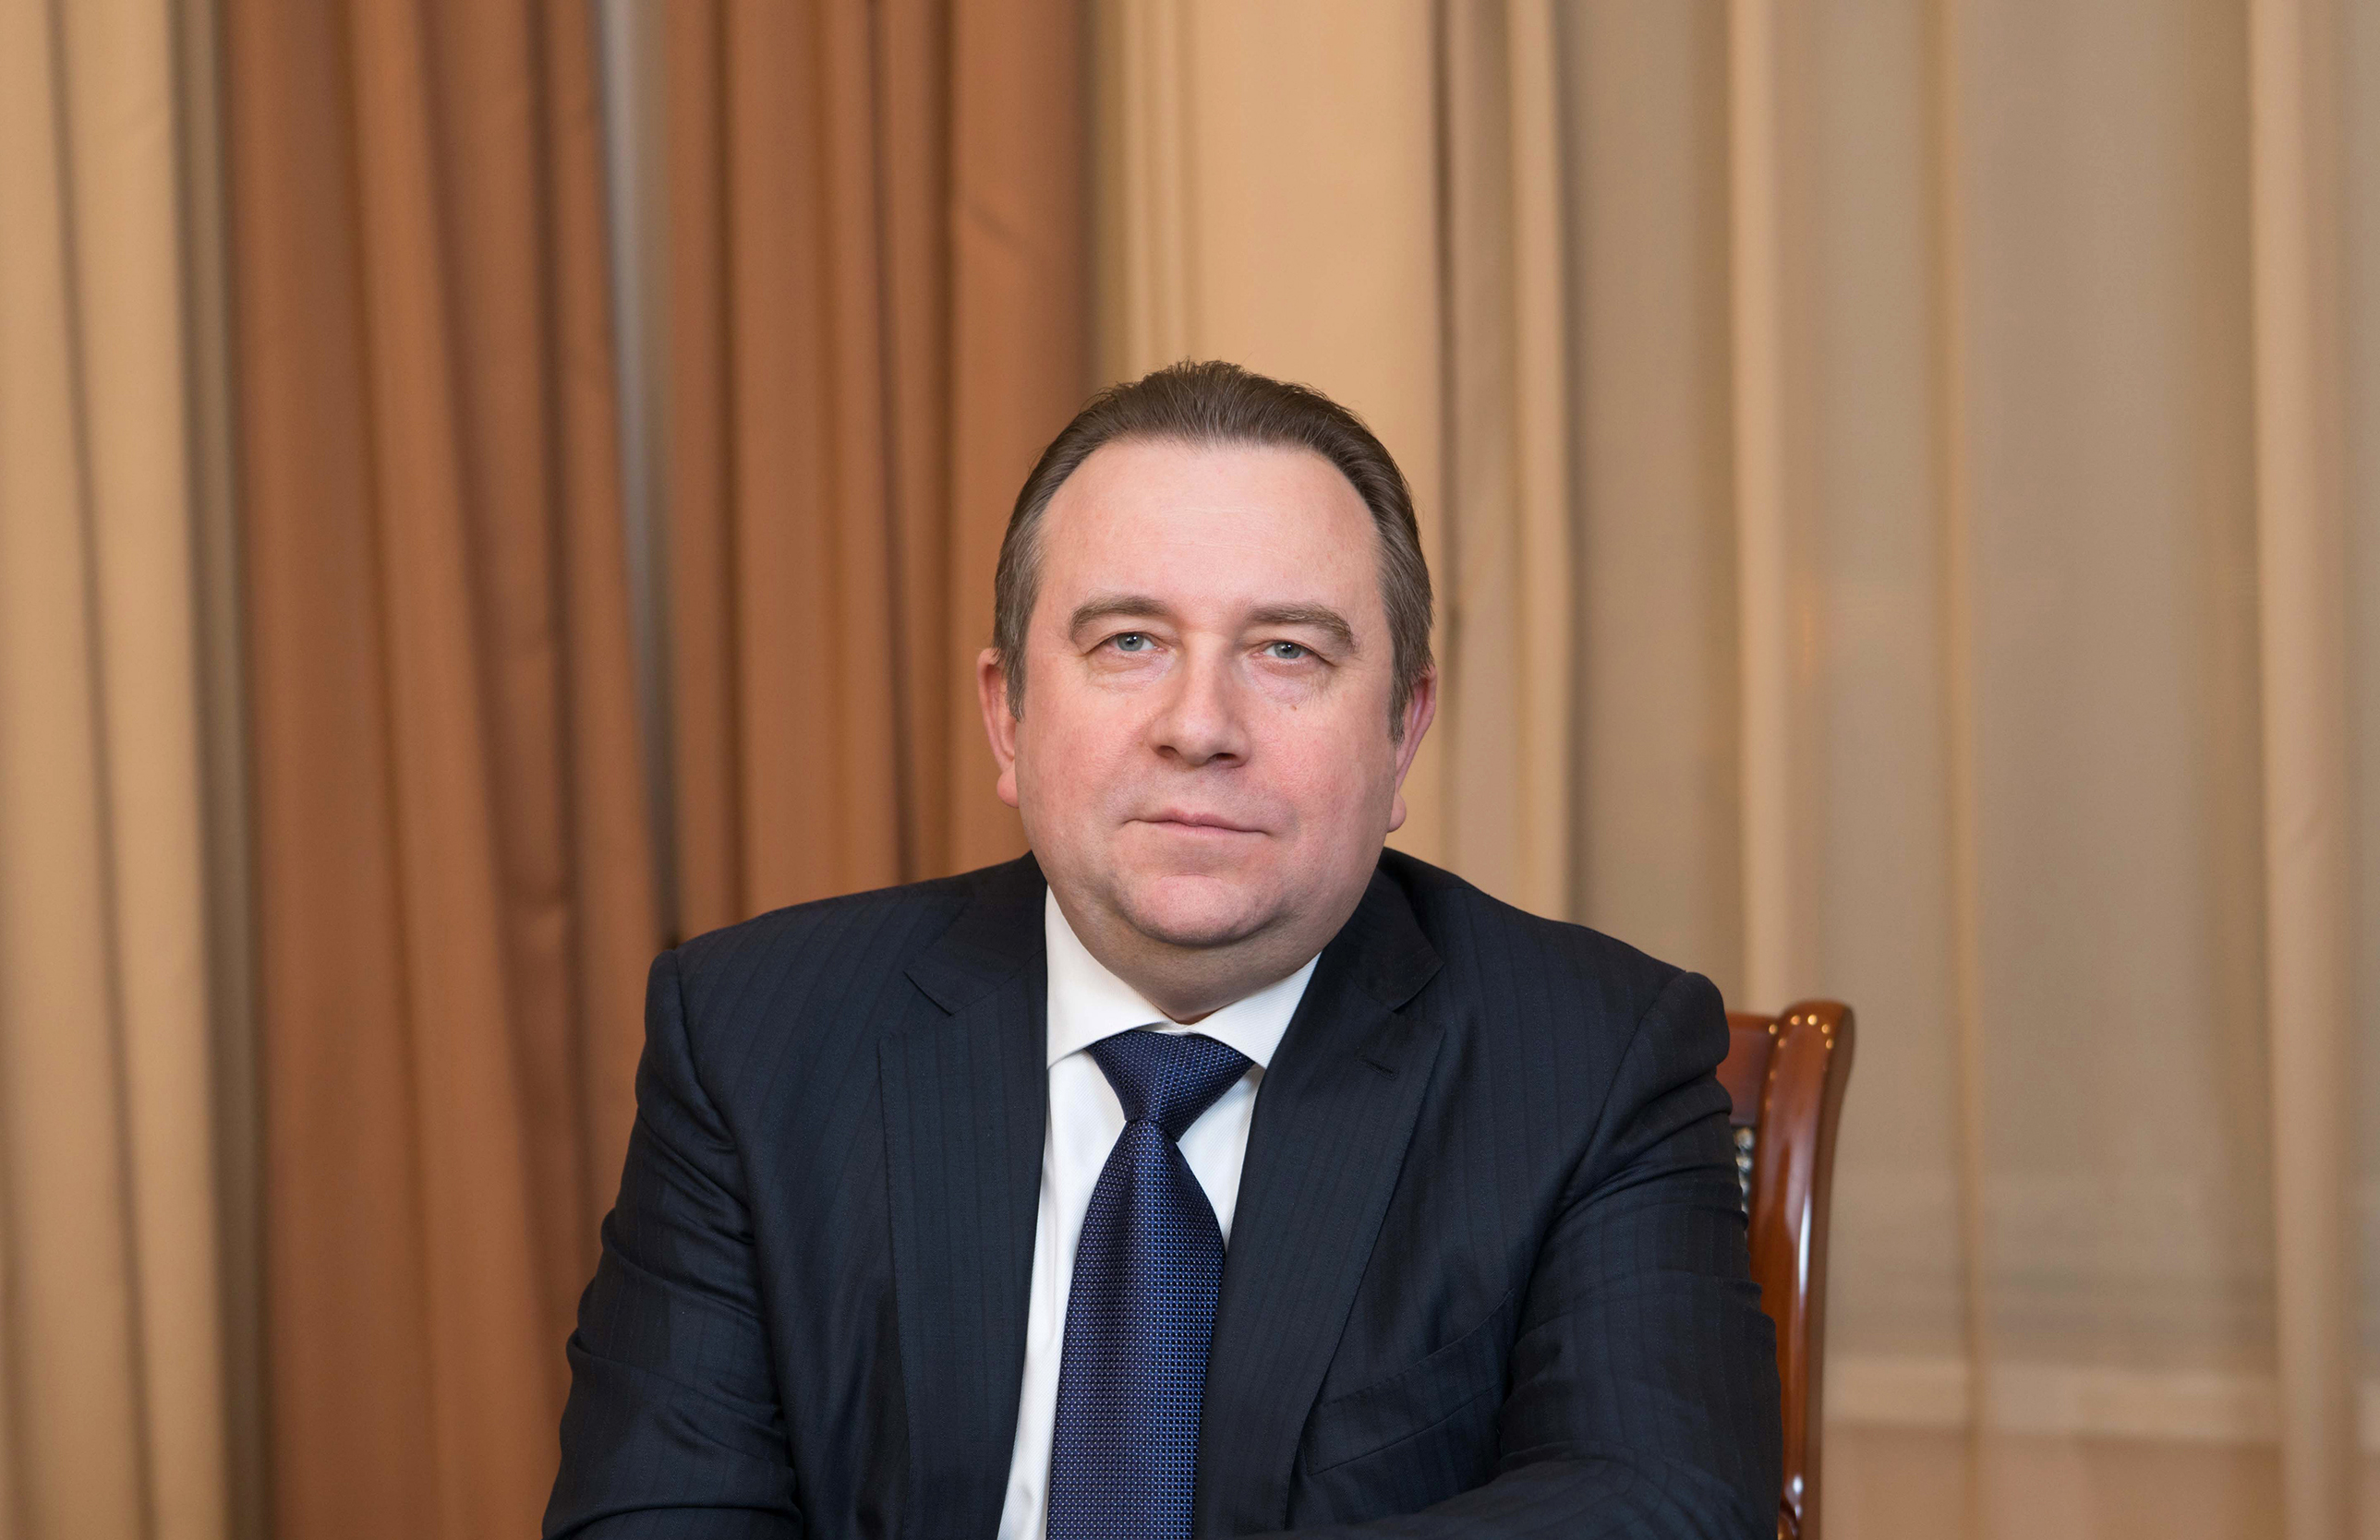 Алексей Рахманов, Президент ОА "Объединенная судостроительная корпорация"